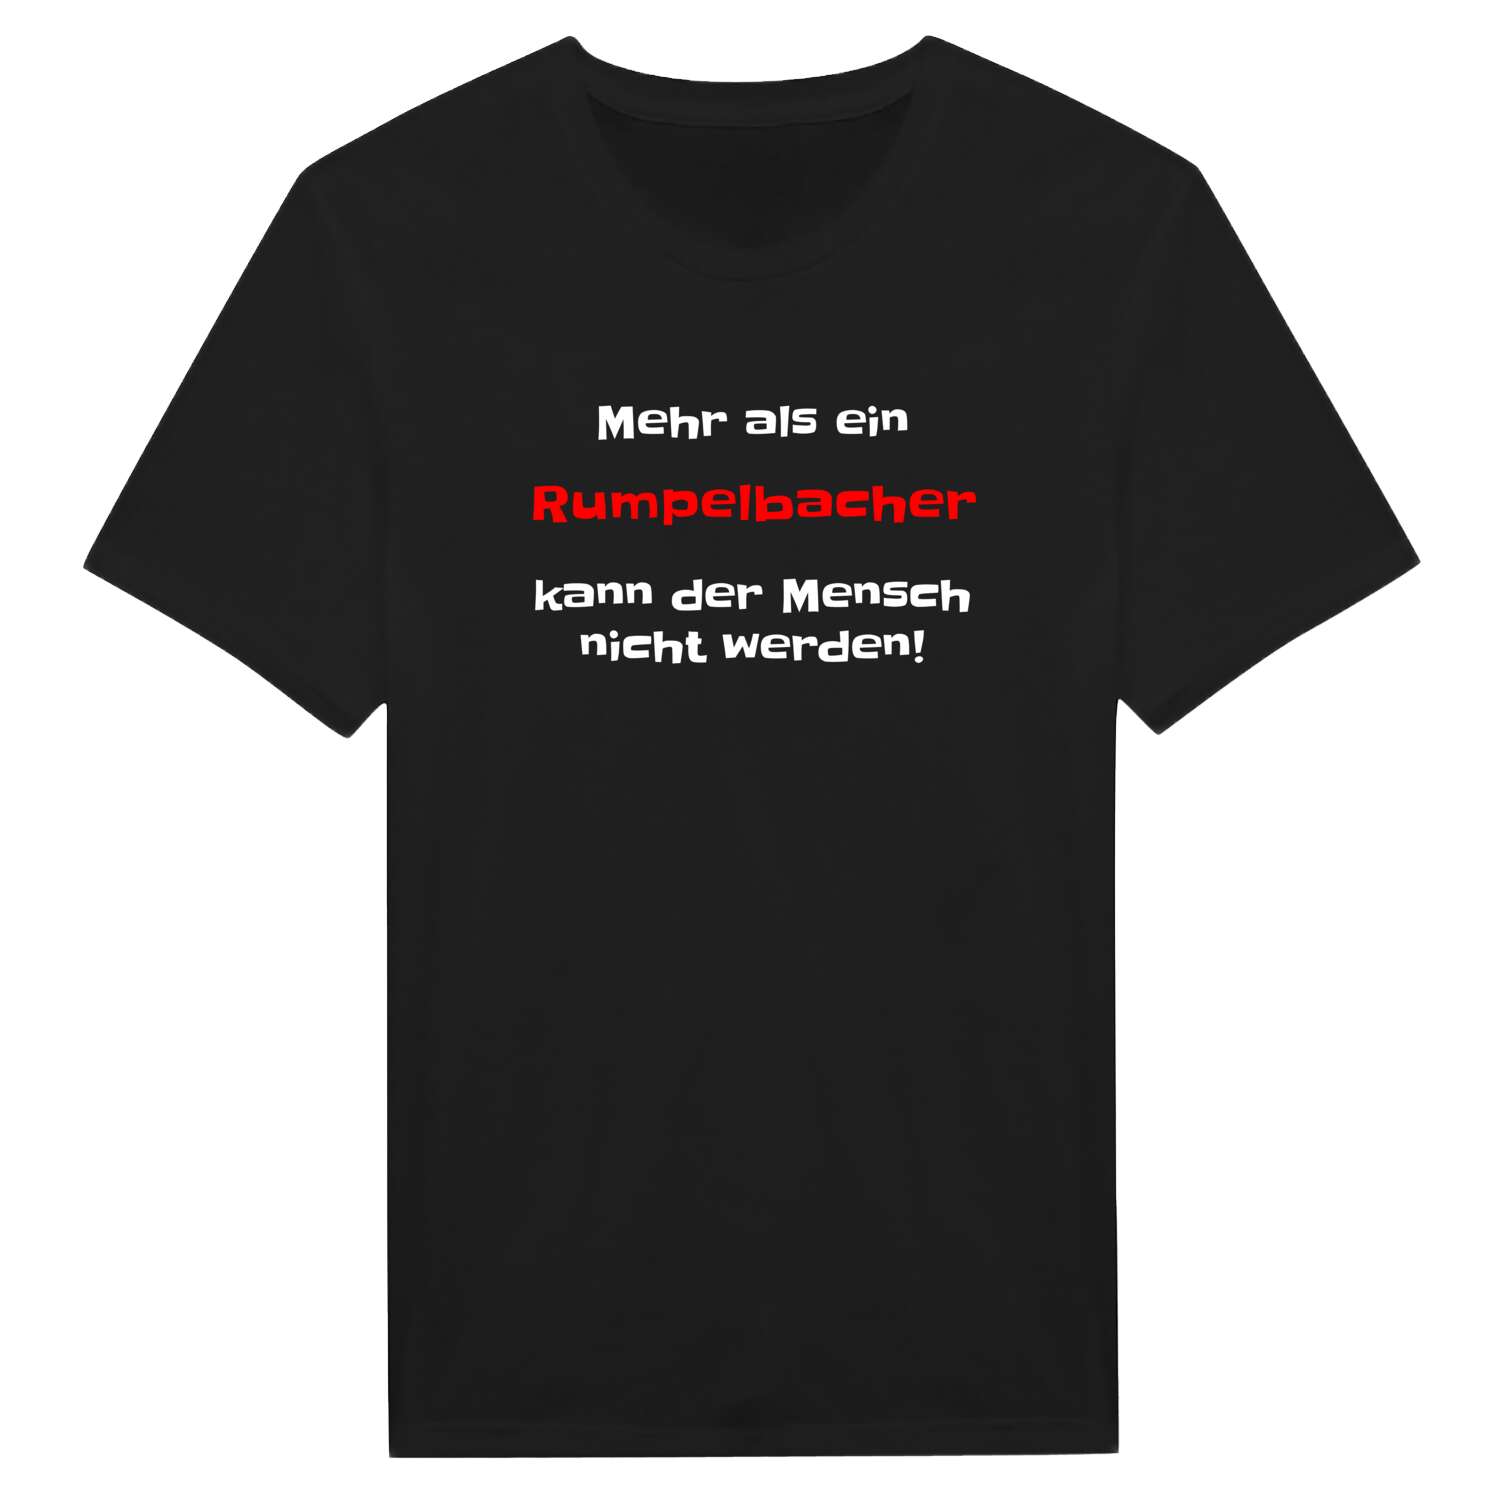 Rumpelbach T-Shirt »Mehr als ein«